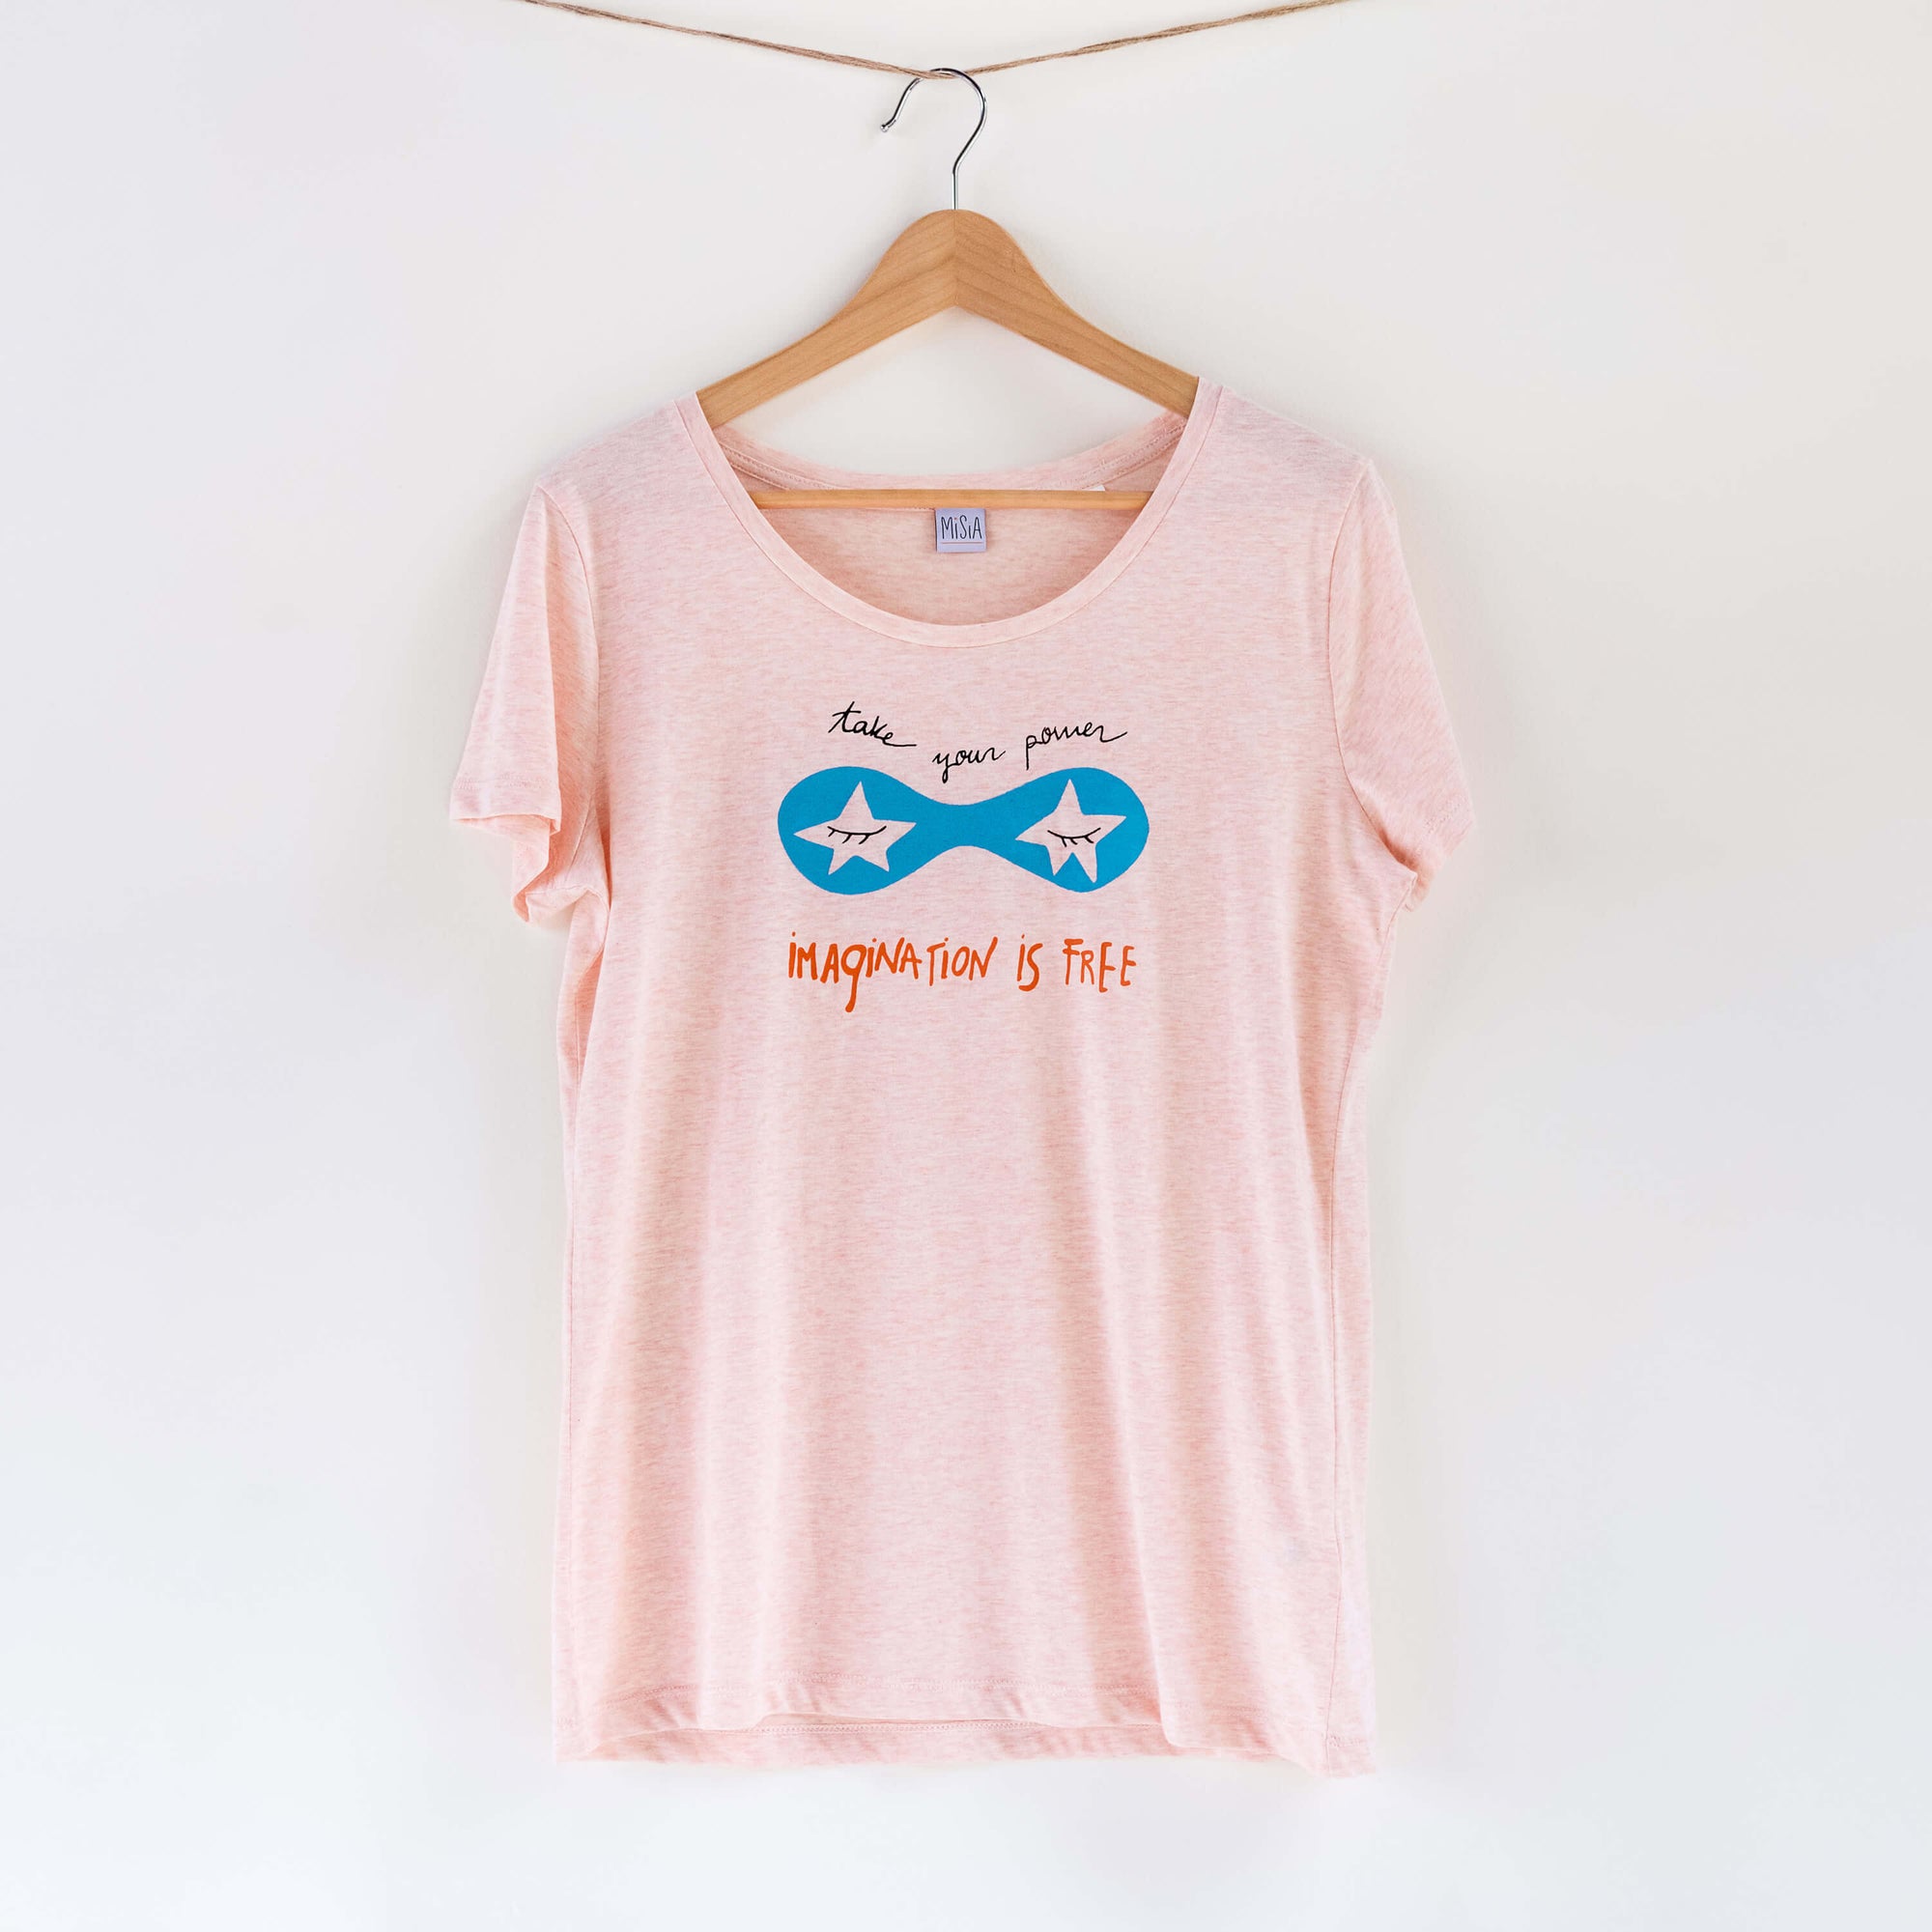 Camiseta rosa de mujer, de algodón orgánico y estampado a mano con tintas ecológicas. Serigrafía en color negro, azul y naranja.